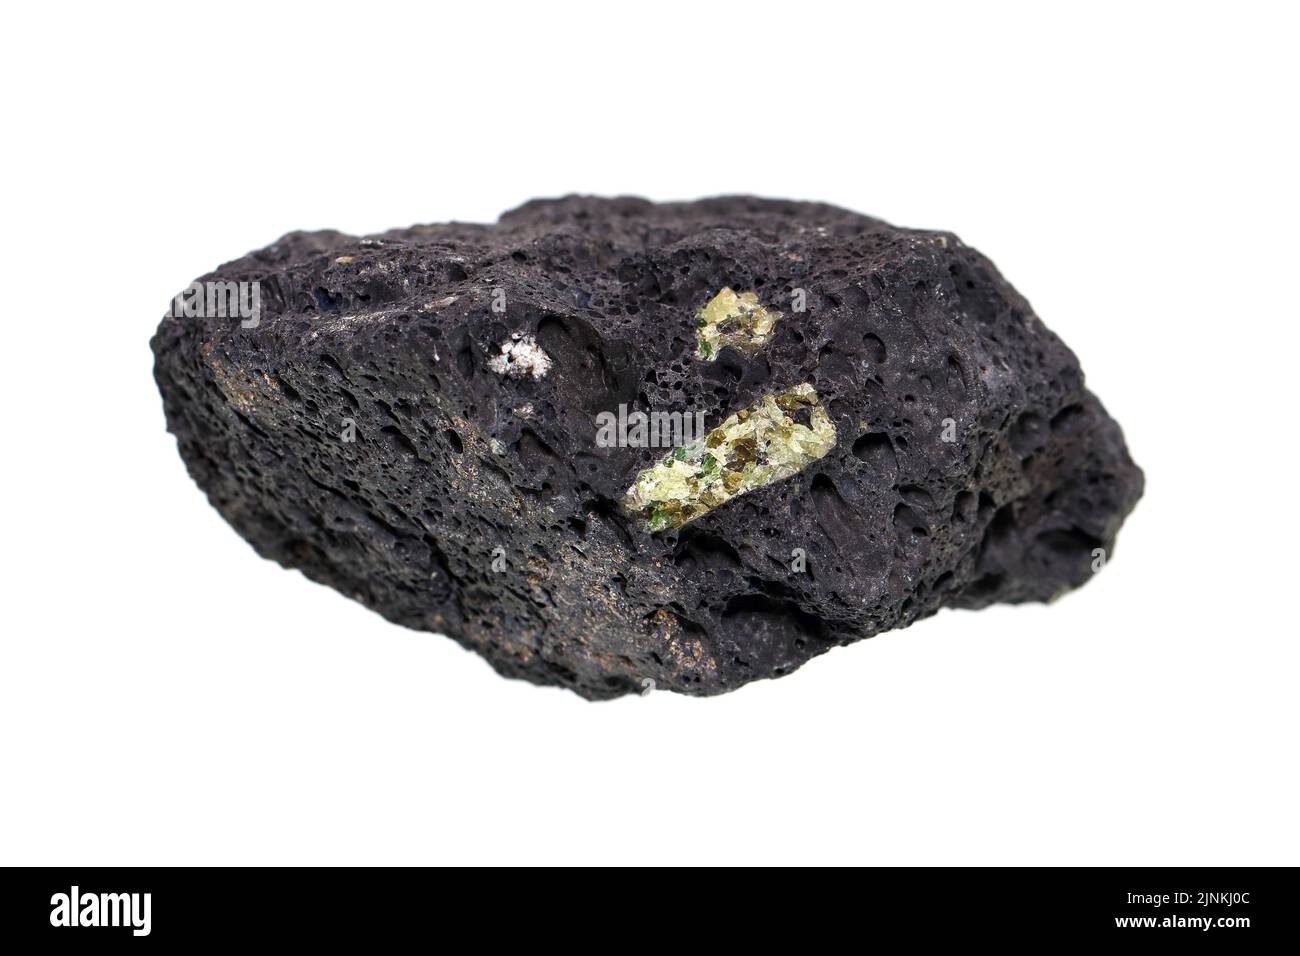 Roca ígnea volcánica de soria con cristal de piedra preciosa olivina/peridoto sobre fondo blanco Foto de stock